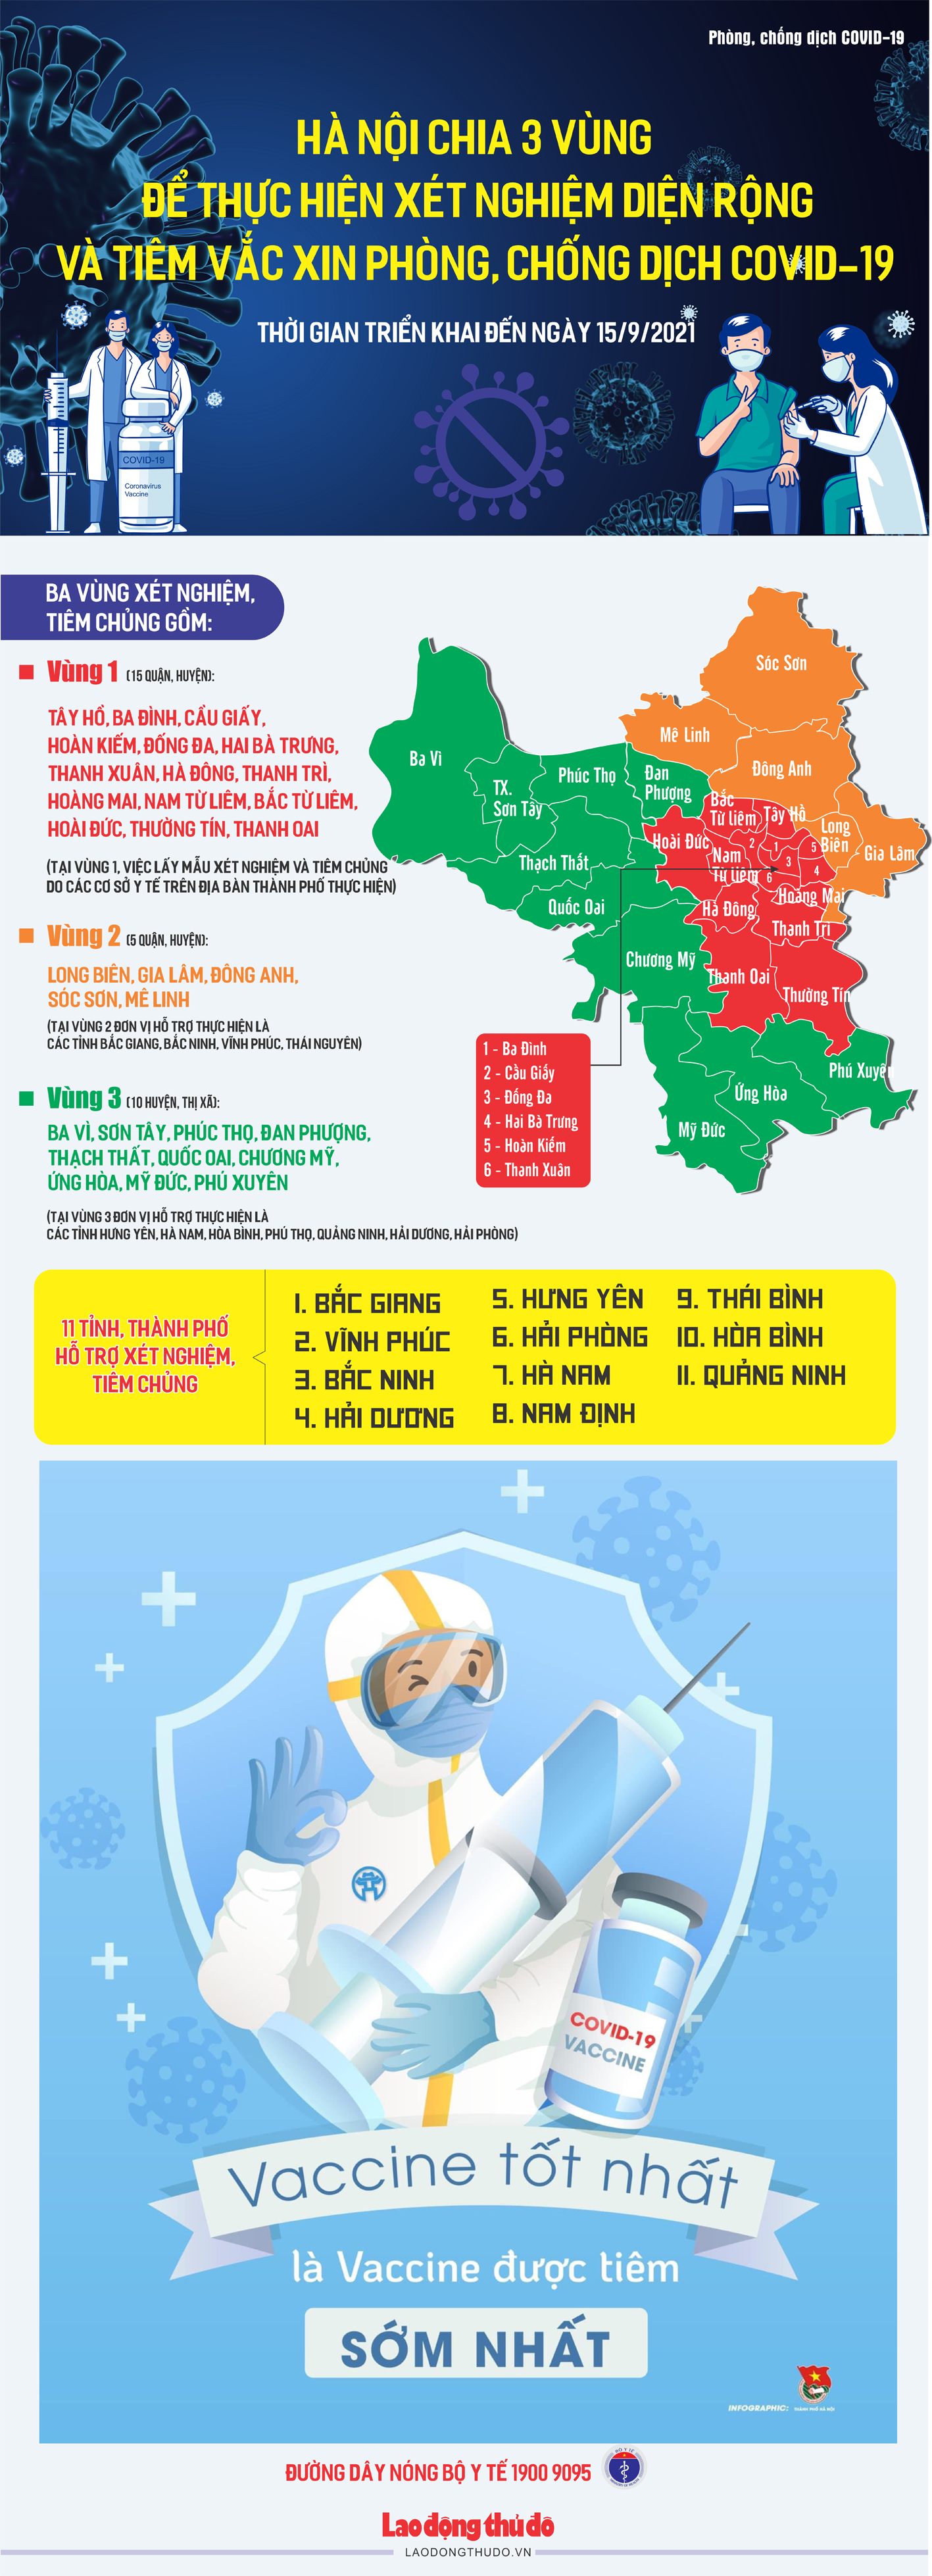 [Infographic] Hà Nội chia 3 vùng để thực hiện xét nghiệm diện rộng và tiêm vắc xin phòng Covid-19